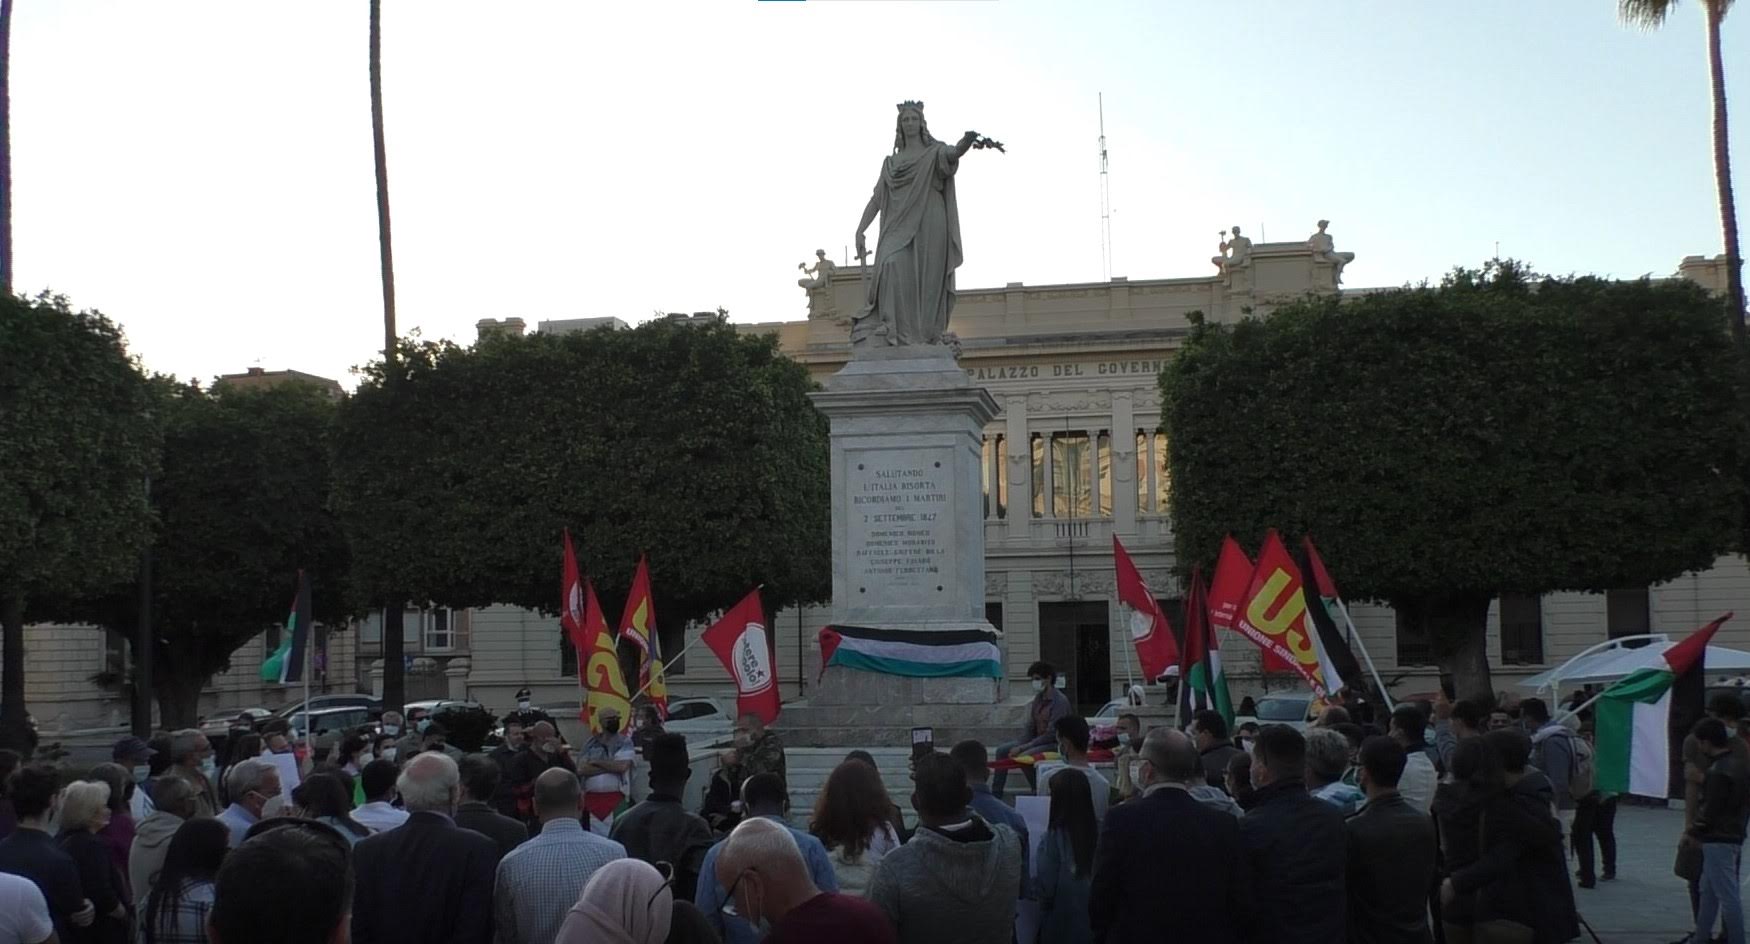 Reggio, tanti popoli in piazza Italia a difesa della Palestina e per la Pace in Medioriente